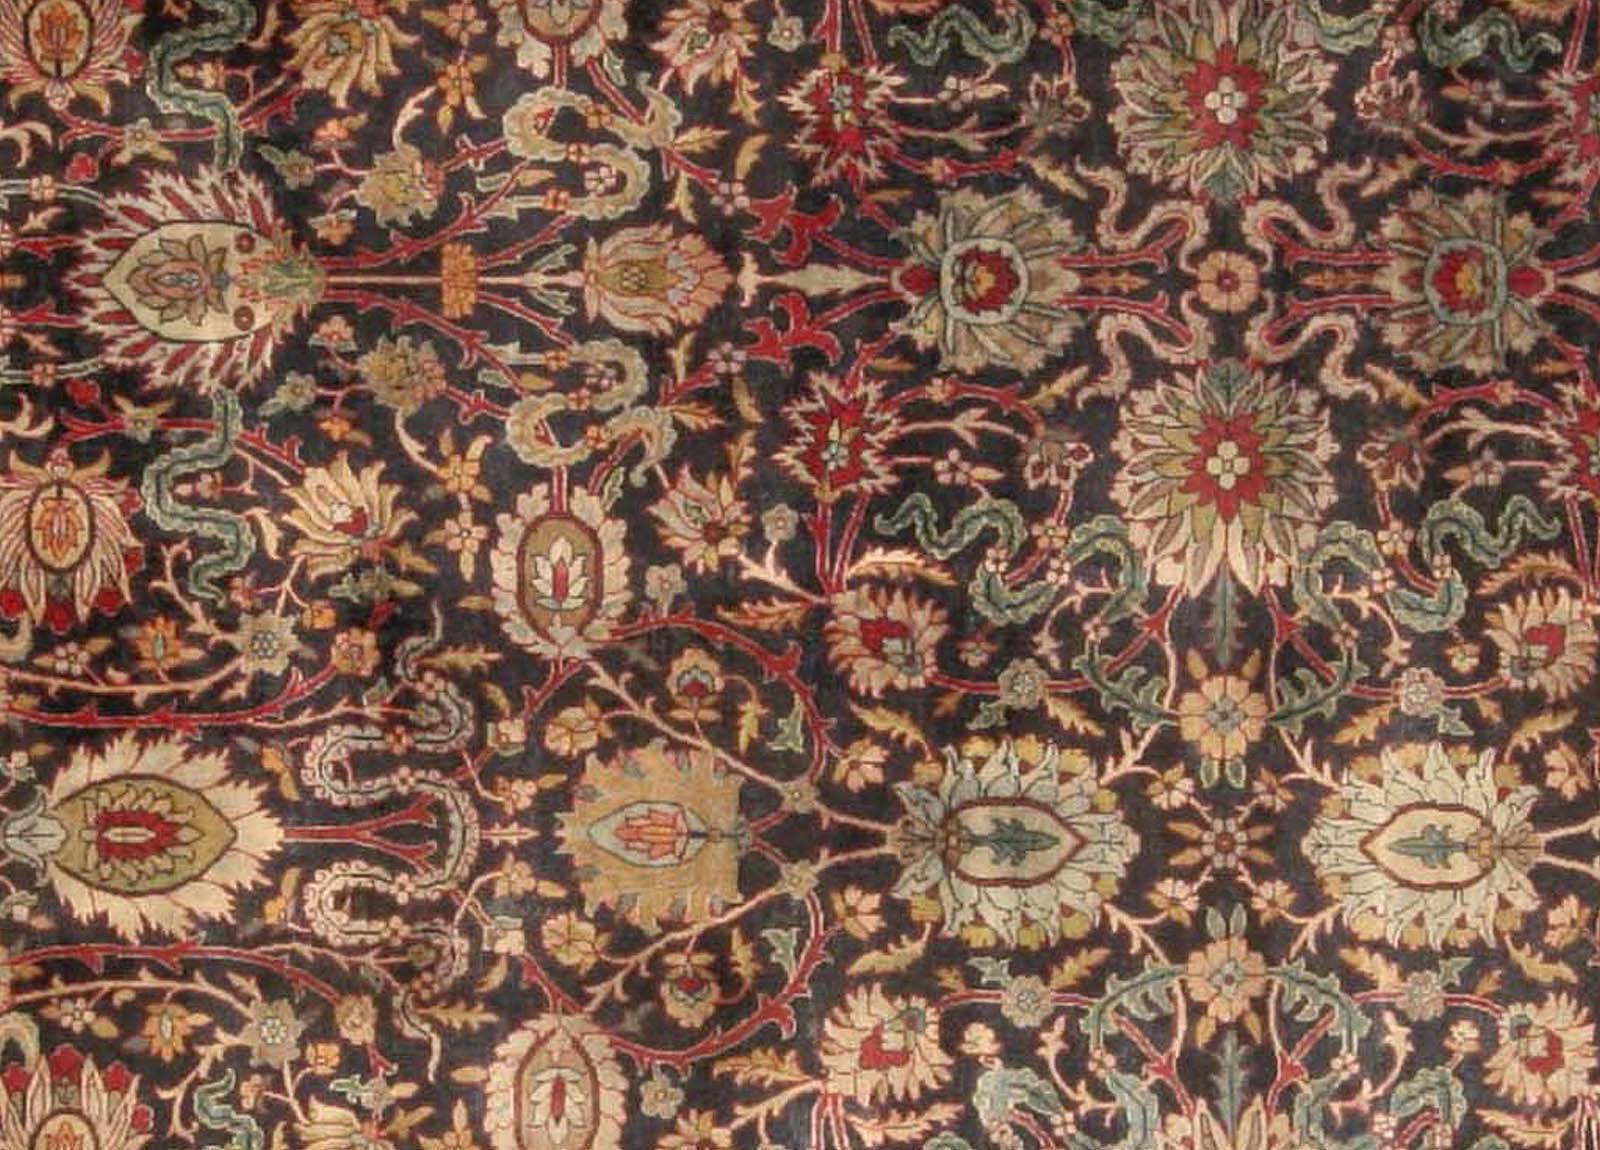 Antique Persian Kirman botanic handmade wool carpet
Size: 11'4